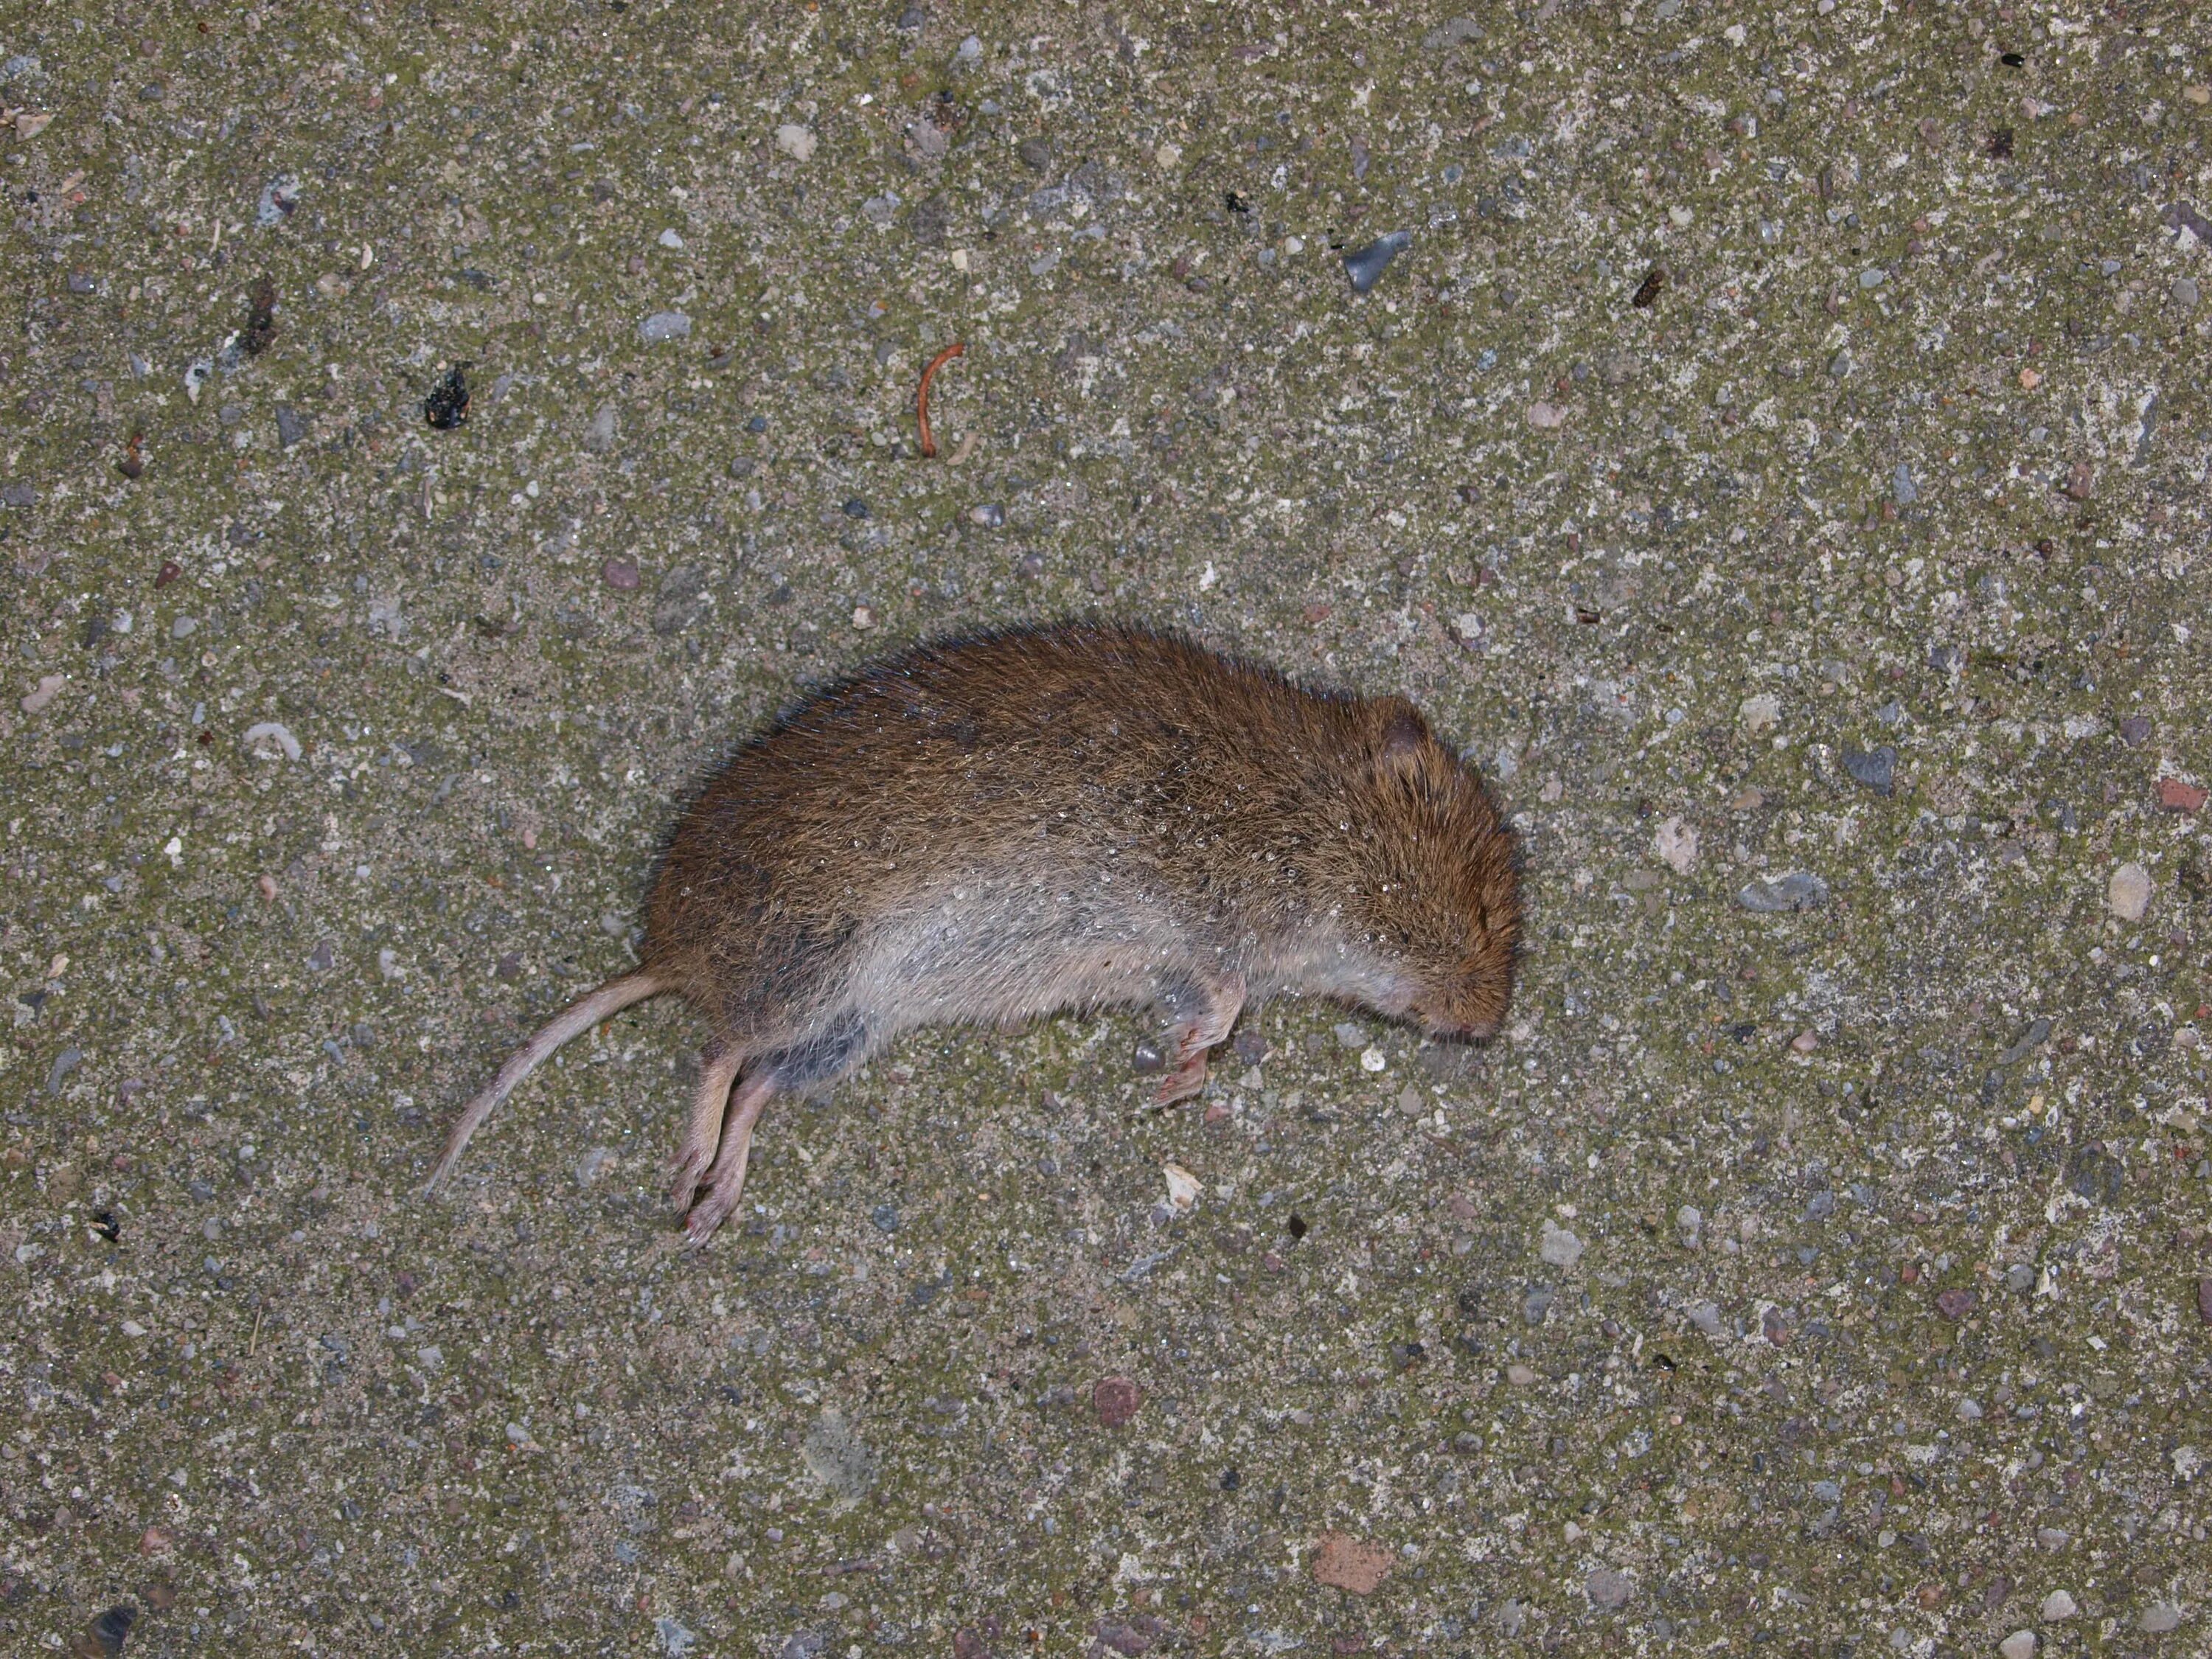 Земляная крыса полевка. Землеройковые крысы. Мышь полевка с коротким хвостом.